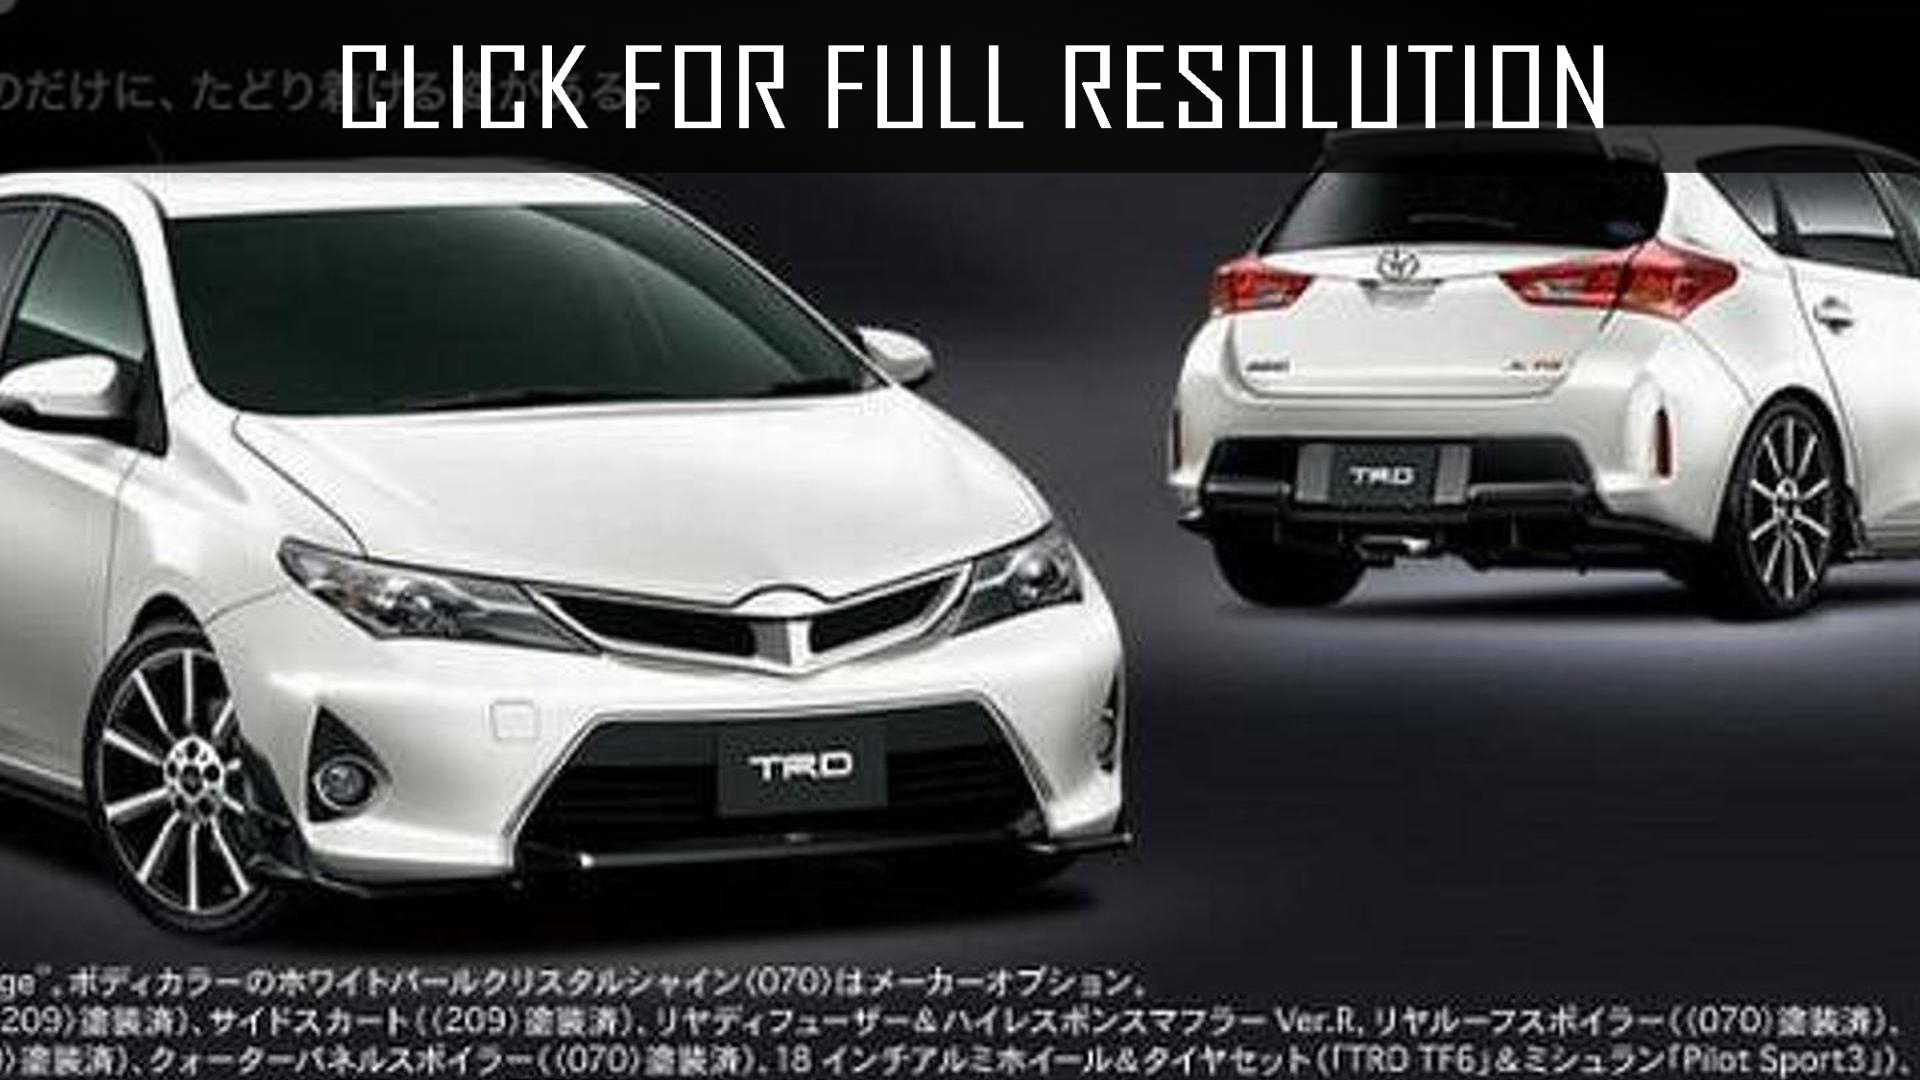 Toyota Auris Jdm